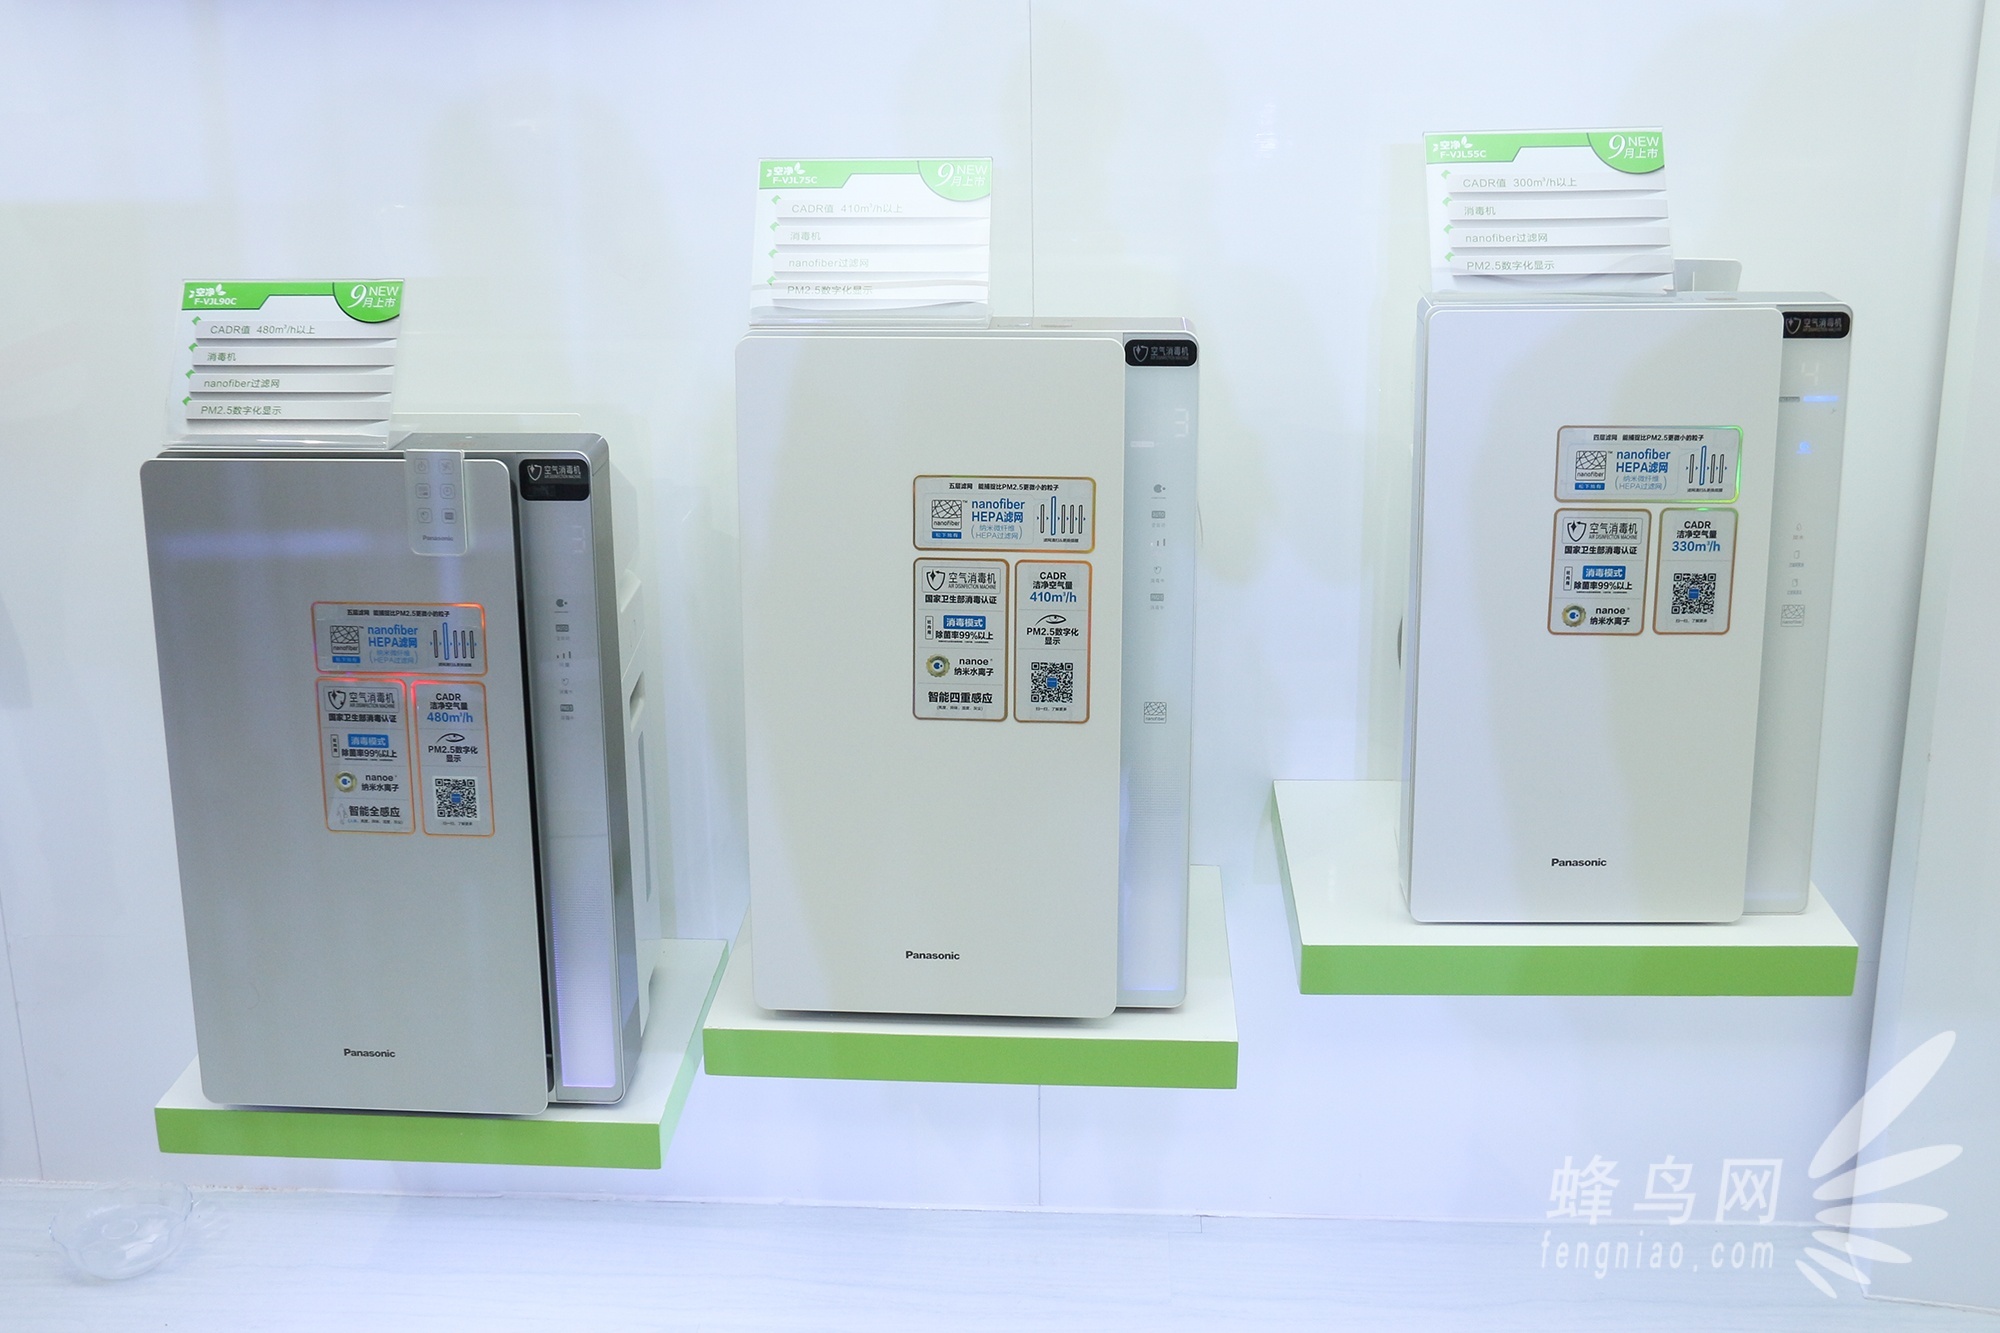 松下电器(中国)有限公司电化住宅设备机器社(简称为ap中国)正式成立